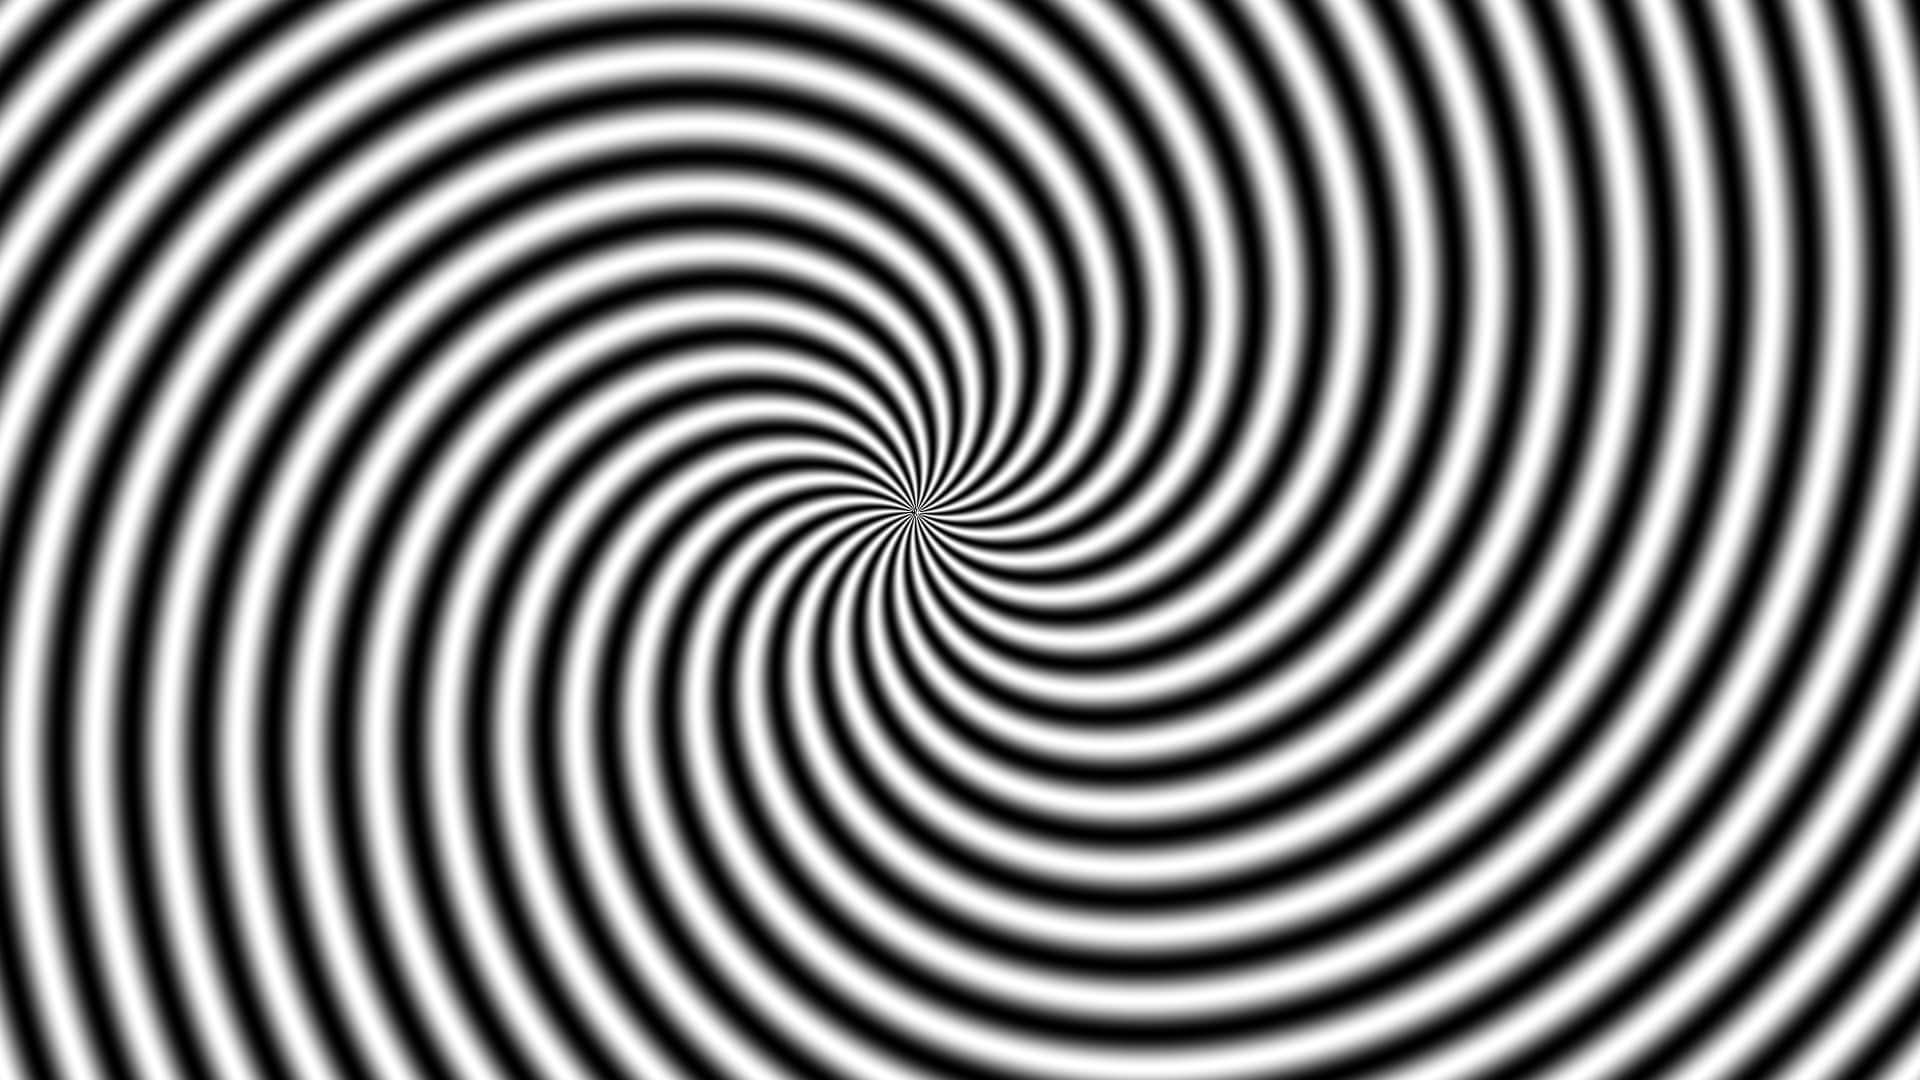 Eye-catching spiral background